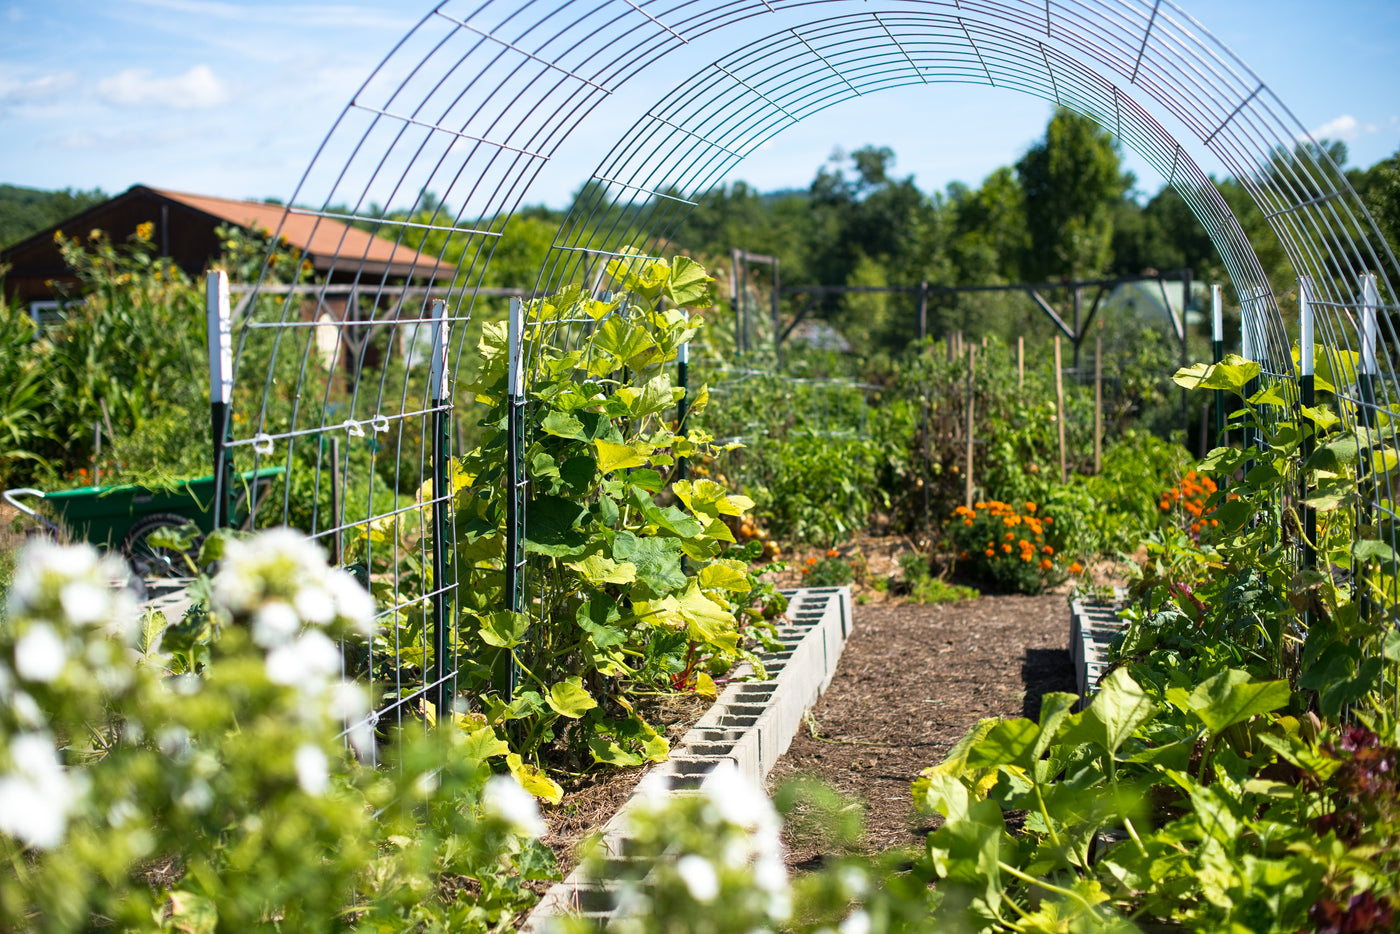 Organic Gardening: Gardening without Harmful Chemicals